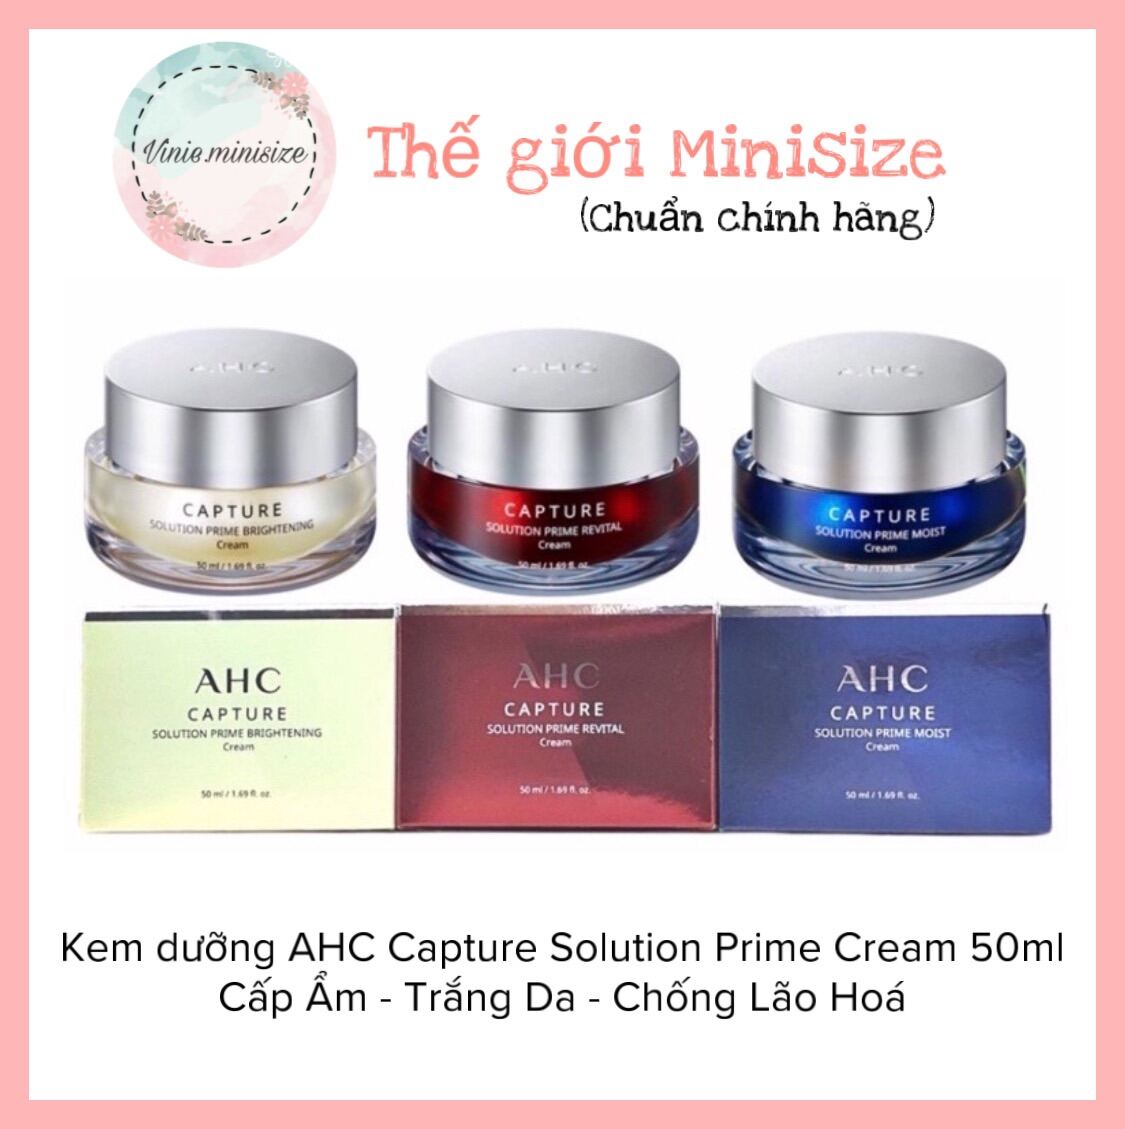 Kem dưỡng AHC Capture Solution Prime Cream 50ml Cấp Ẩm - Trắng Da - Chống Lão Hoá | Vinie.minisize